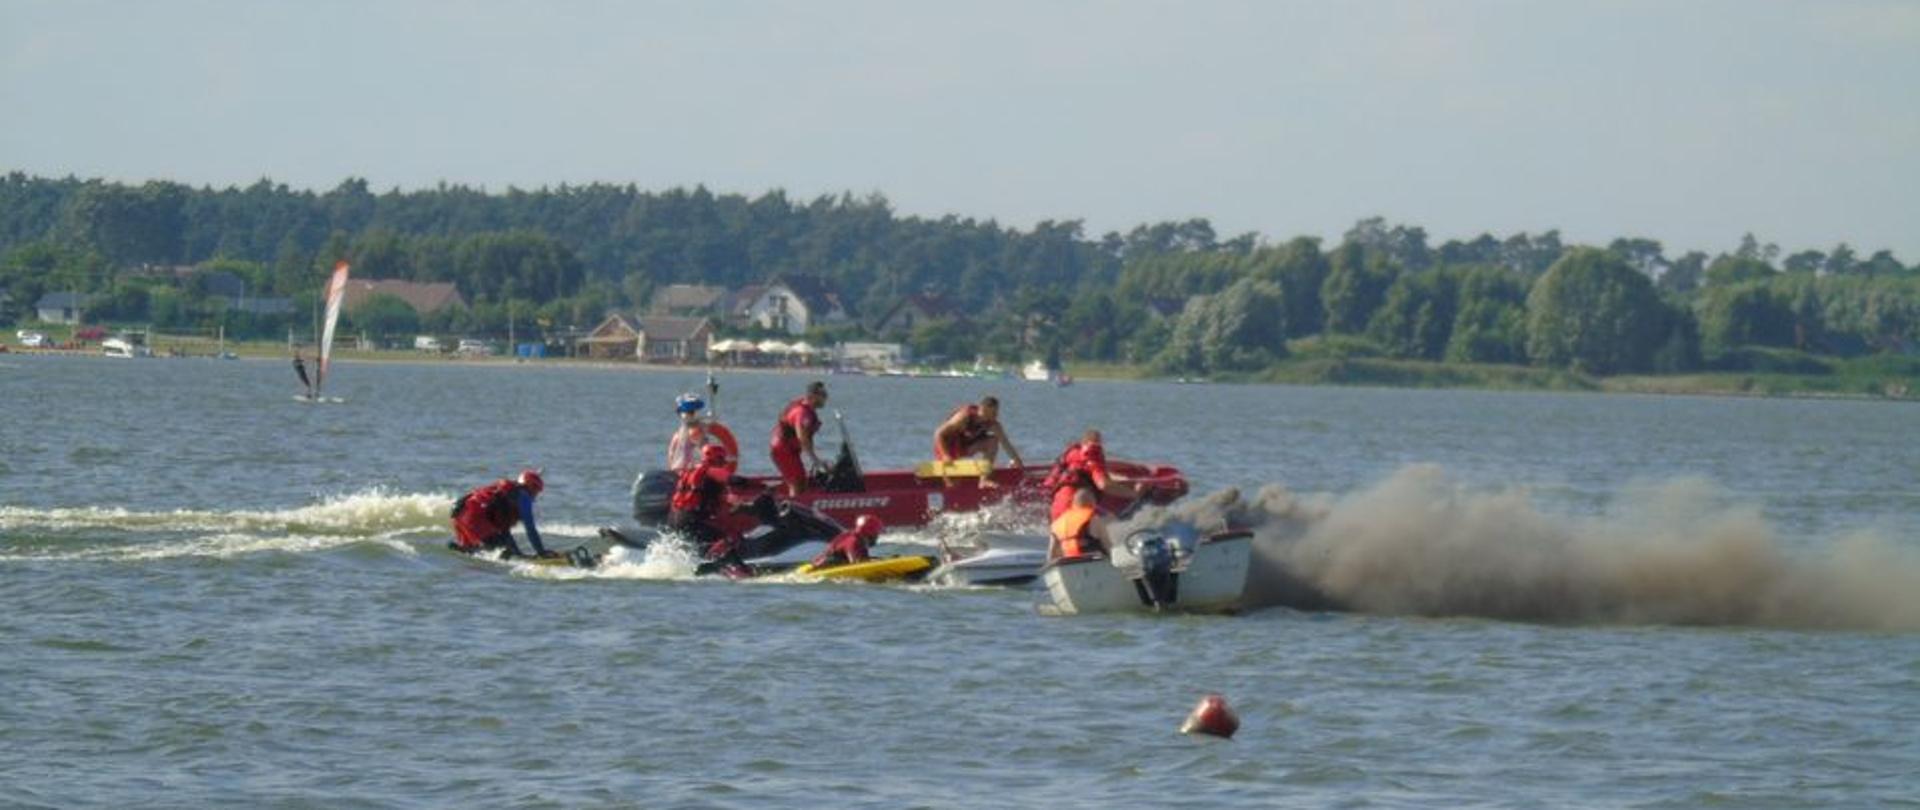 Jezioro, na wodzie czerwone i białe łodzie ratownicze, dwa skutery wodne koloru żółtego i białego. Z jednej z łodzi wydobywa się ciemny dym, powstał pożar. Ratownicy ubrani w czerwone kombinezony prowadzą działania ratownicze.